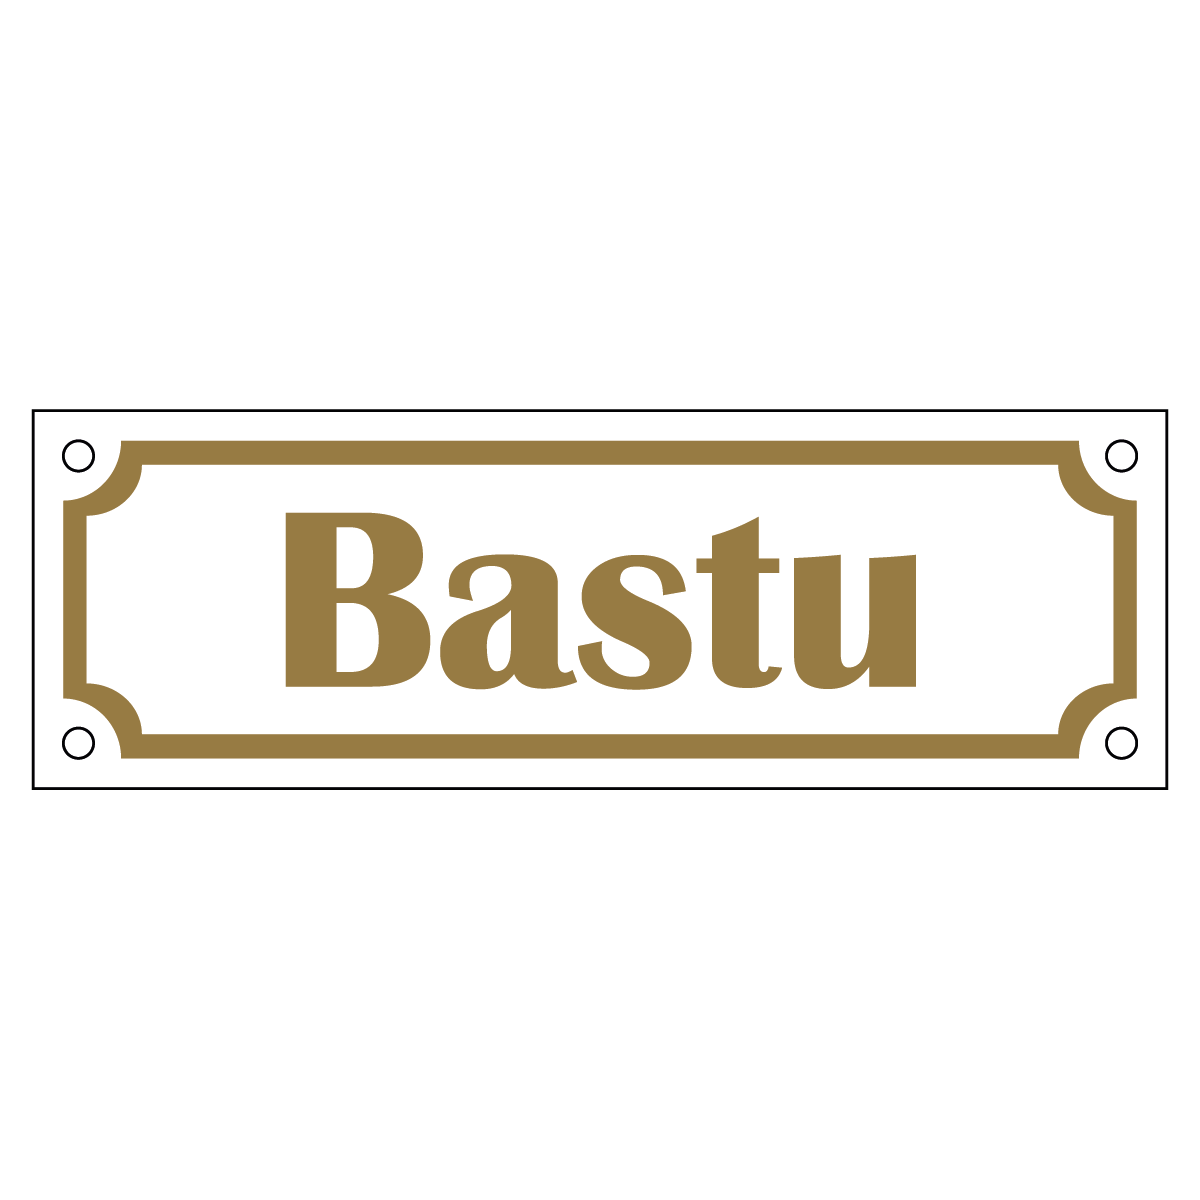 Bastu - Skylt - 150x50mm - Vit - Guld